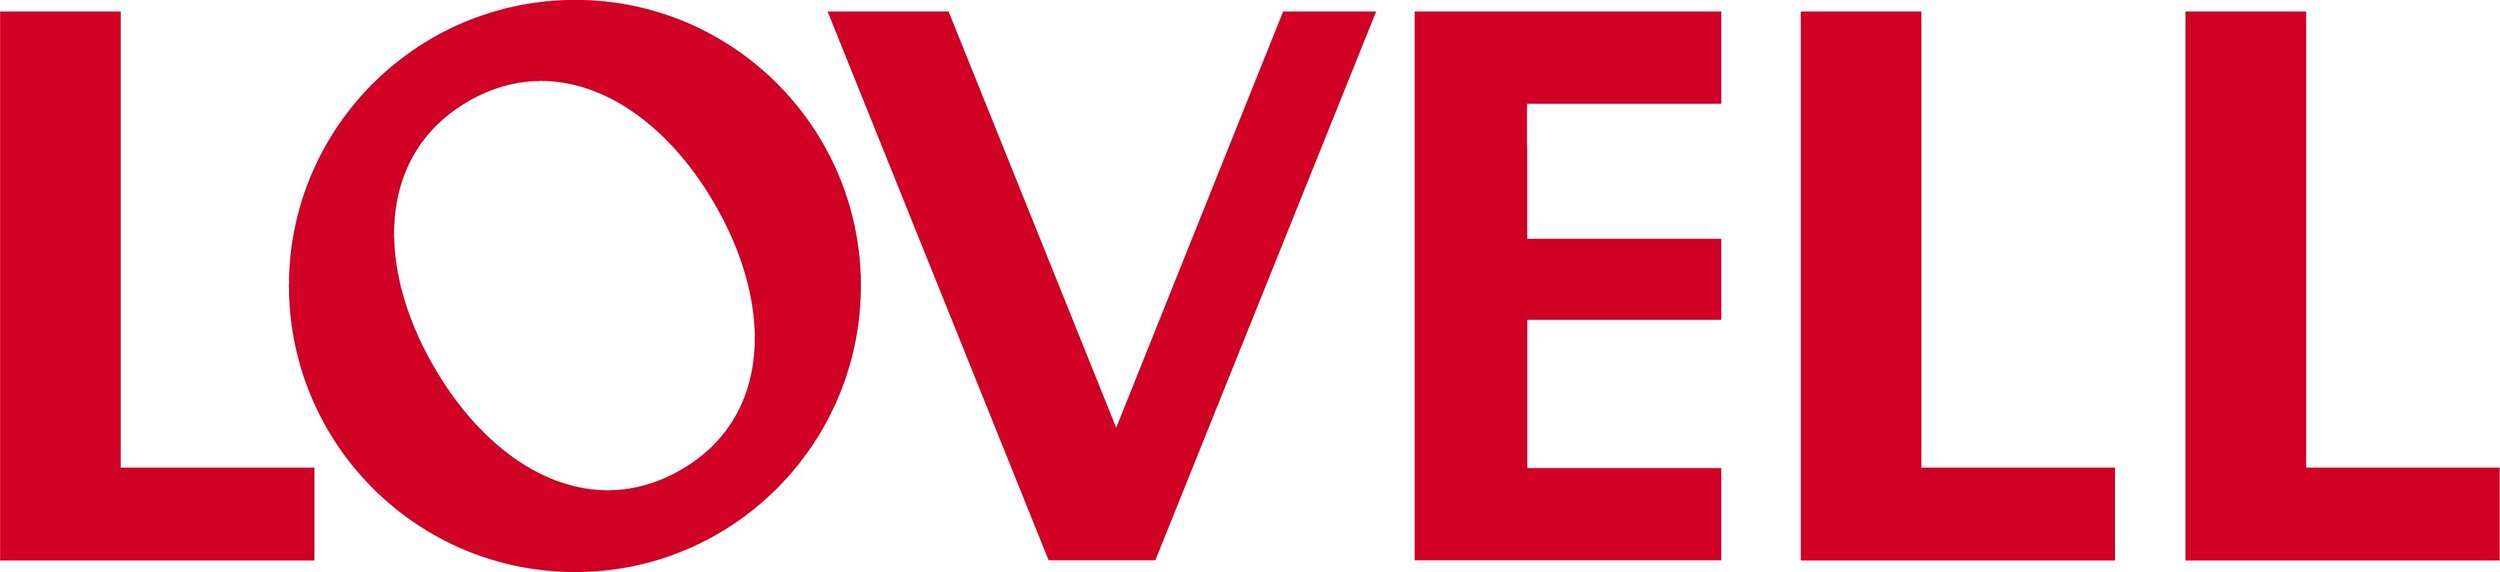 Lovell logo.jpg